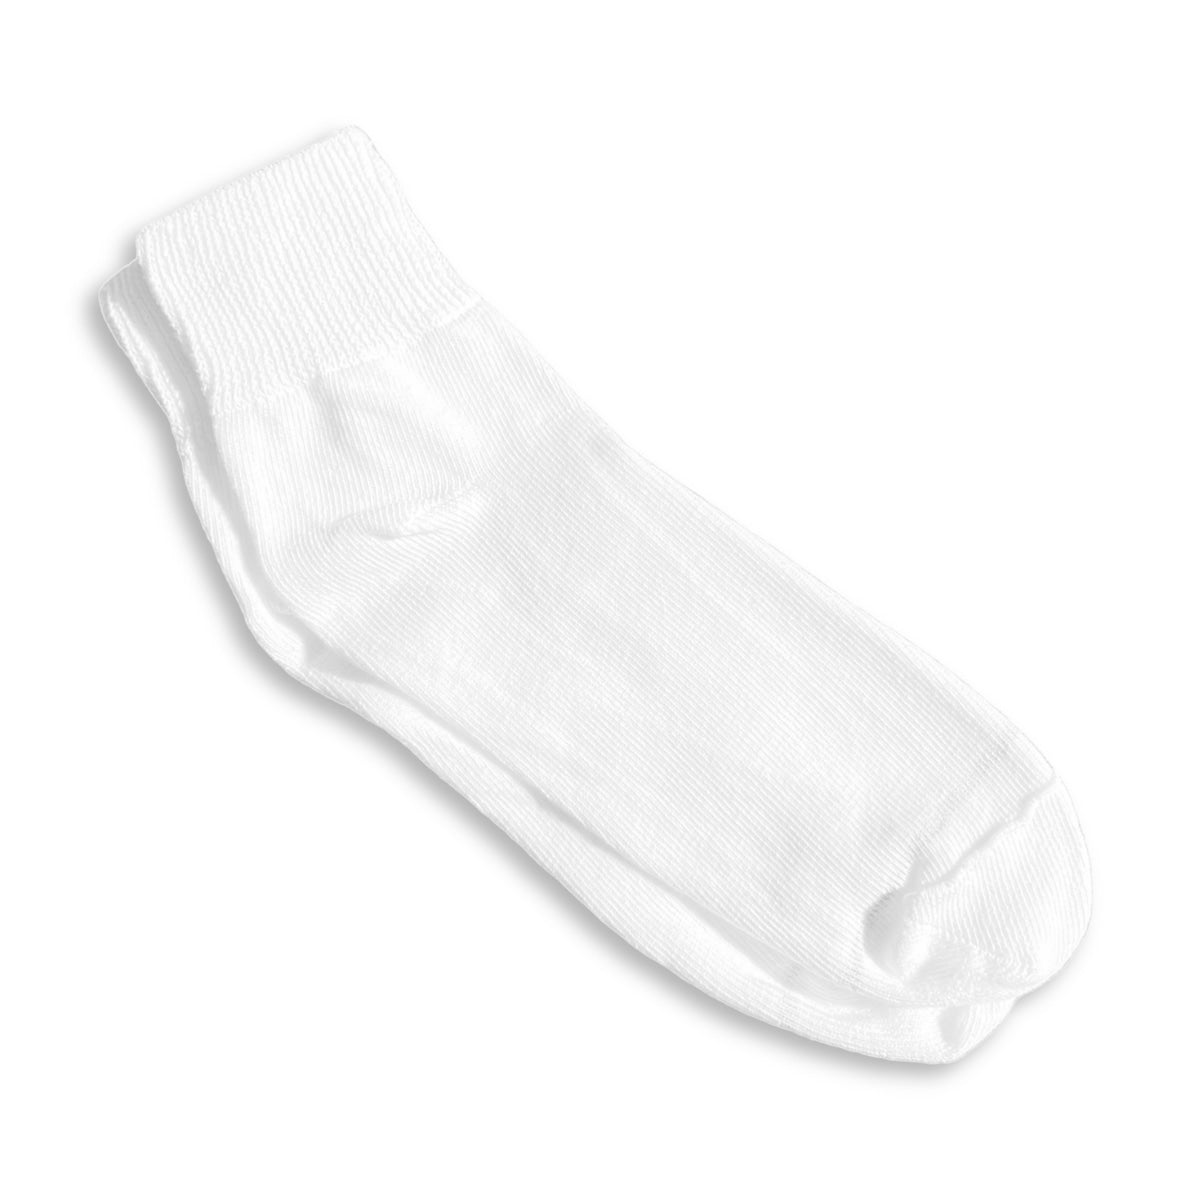 wider white ankle socks - wider quarter socks